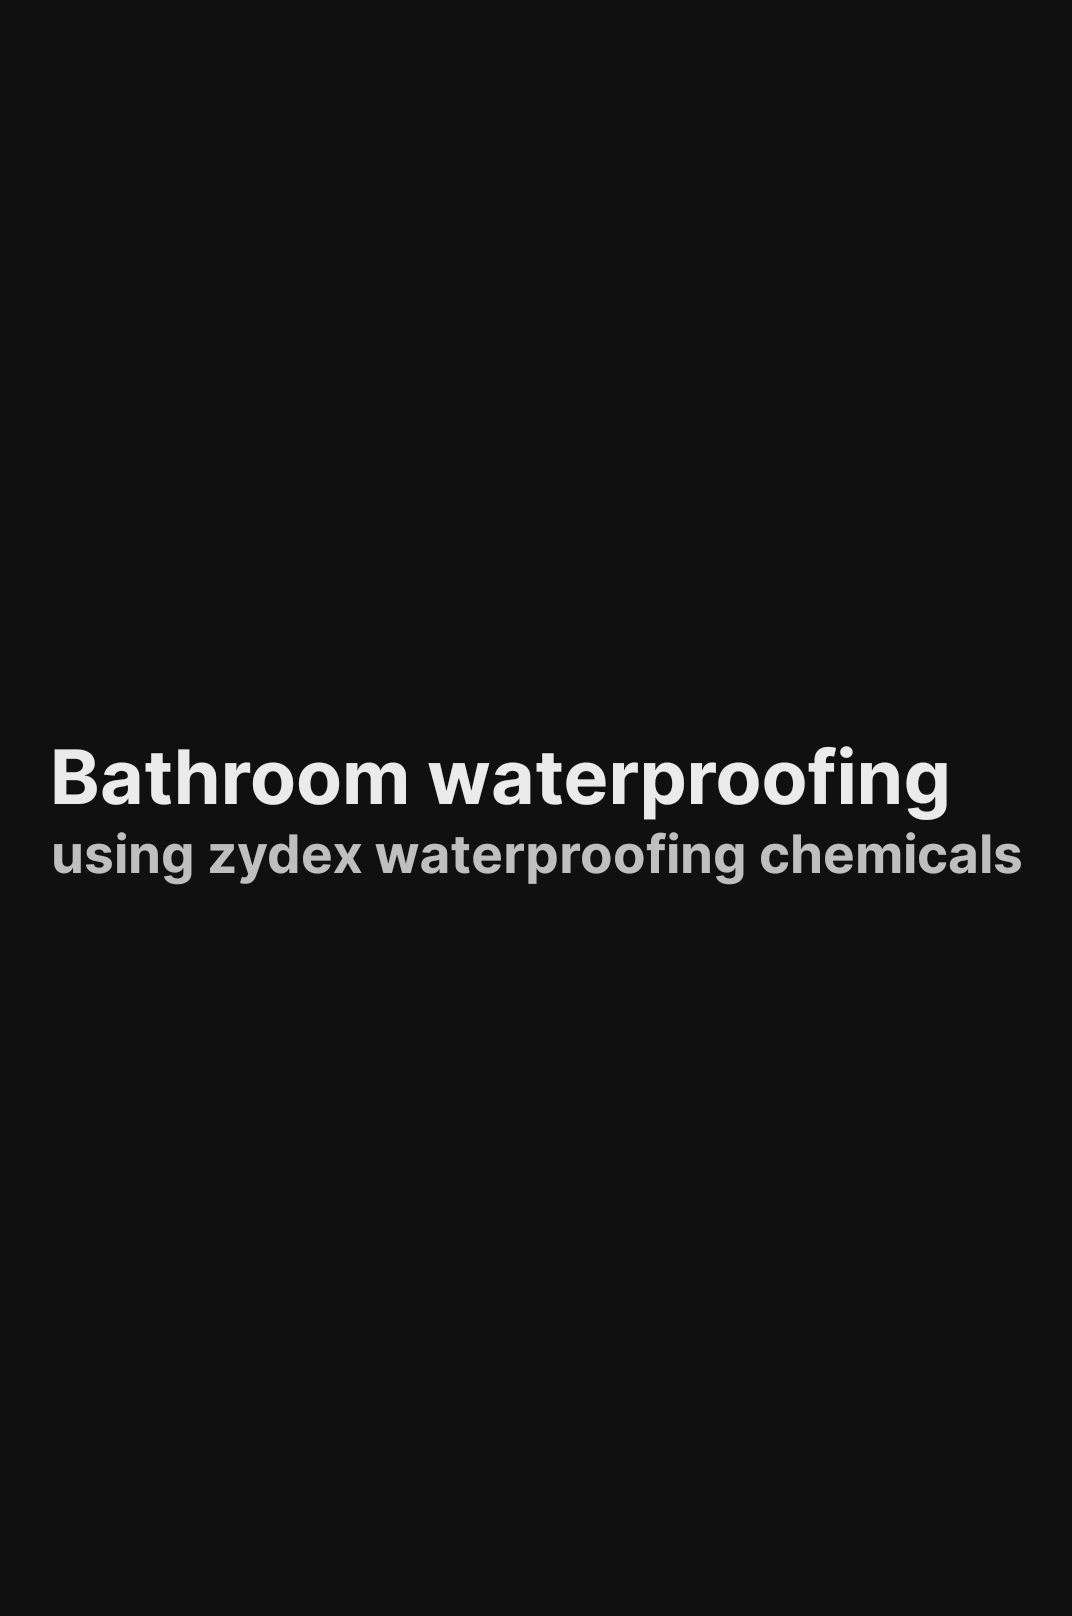 Bathroom waterproofing #spitzerconcept  #zydex  #zycosil+  #zycoprime  #BathroomRenovation  #bathroomwaterproofing  #seepage  #leakproof